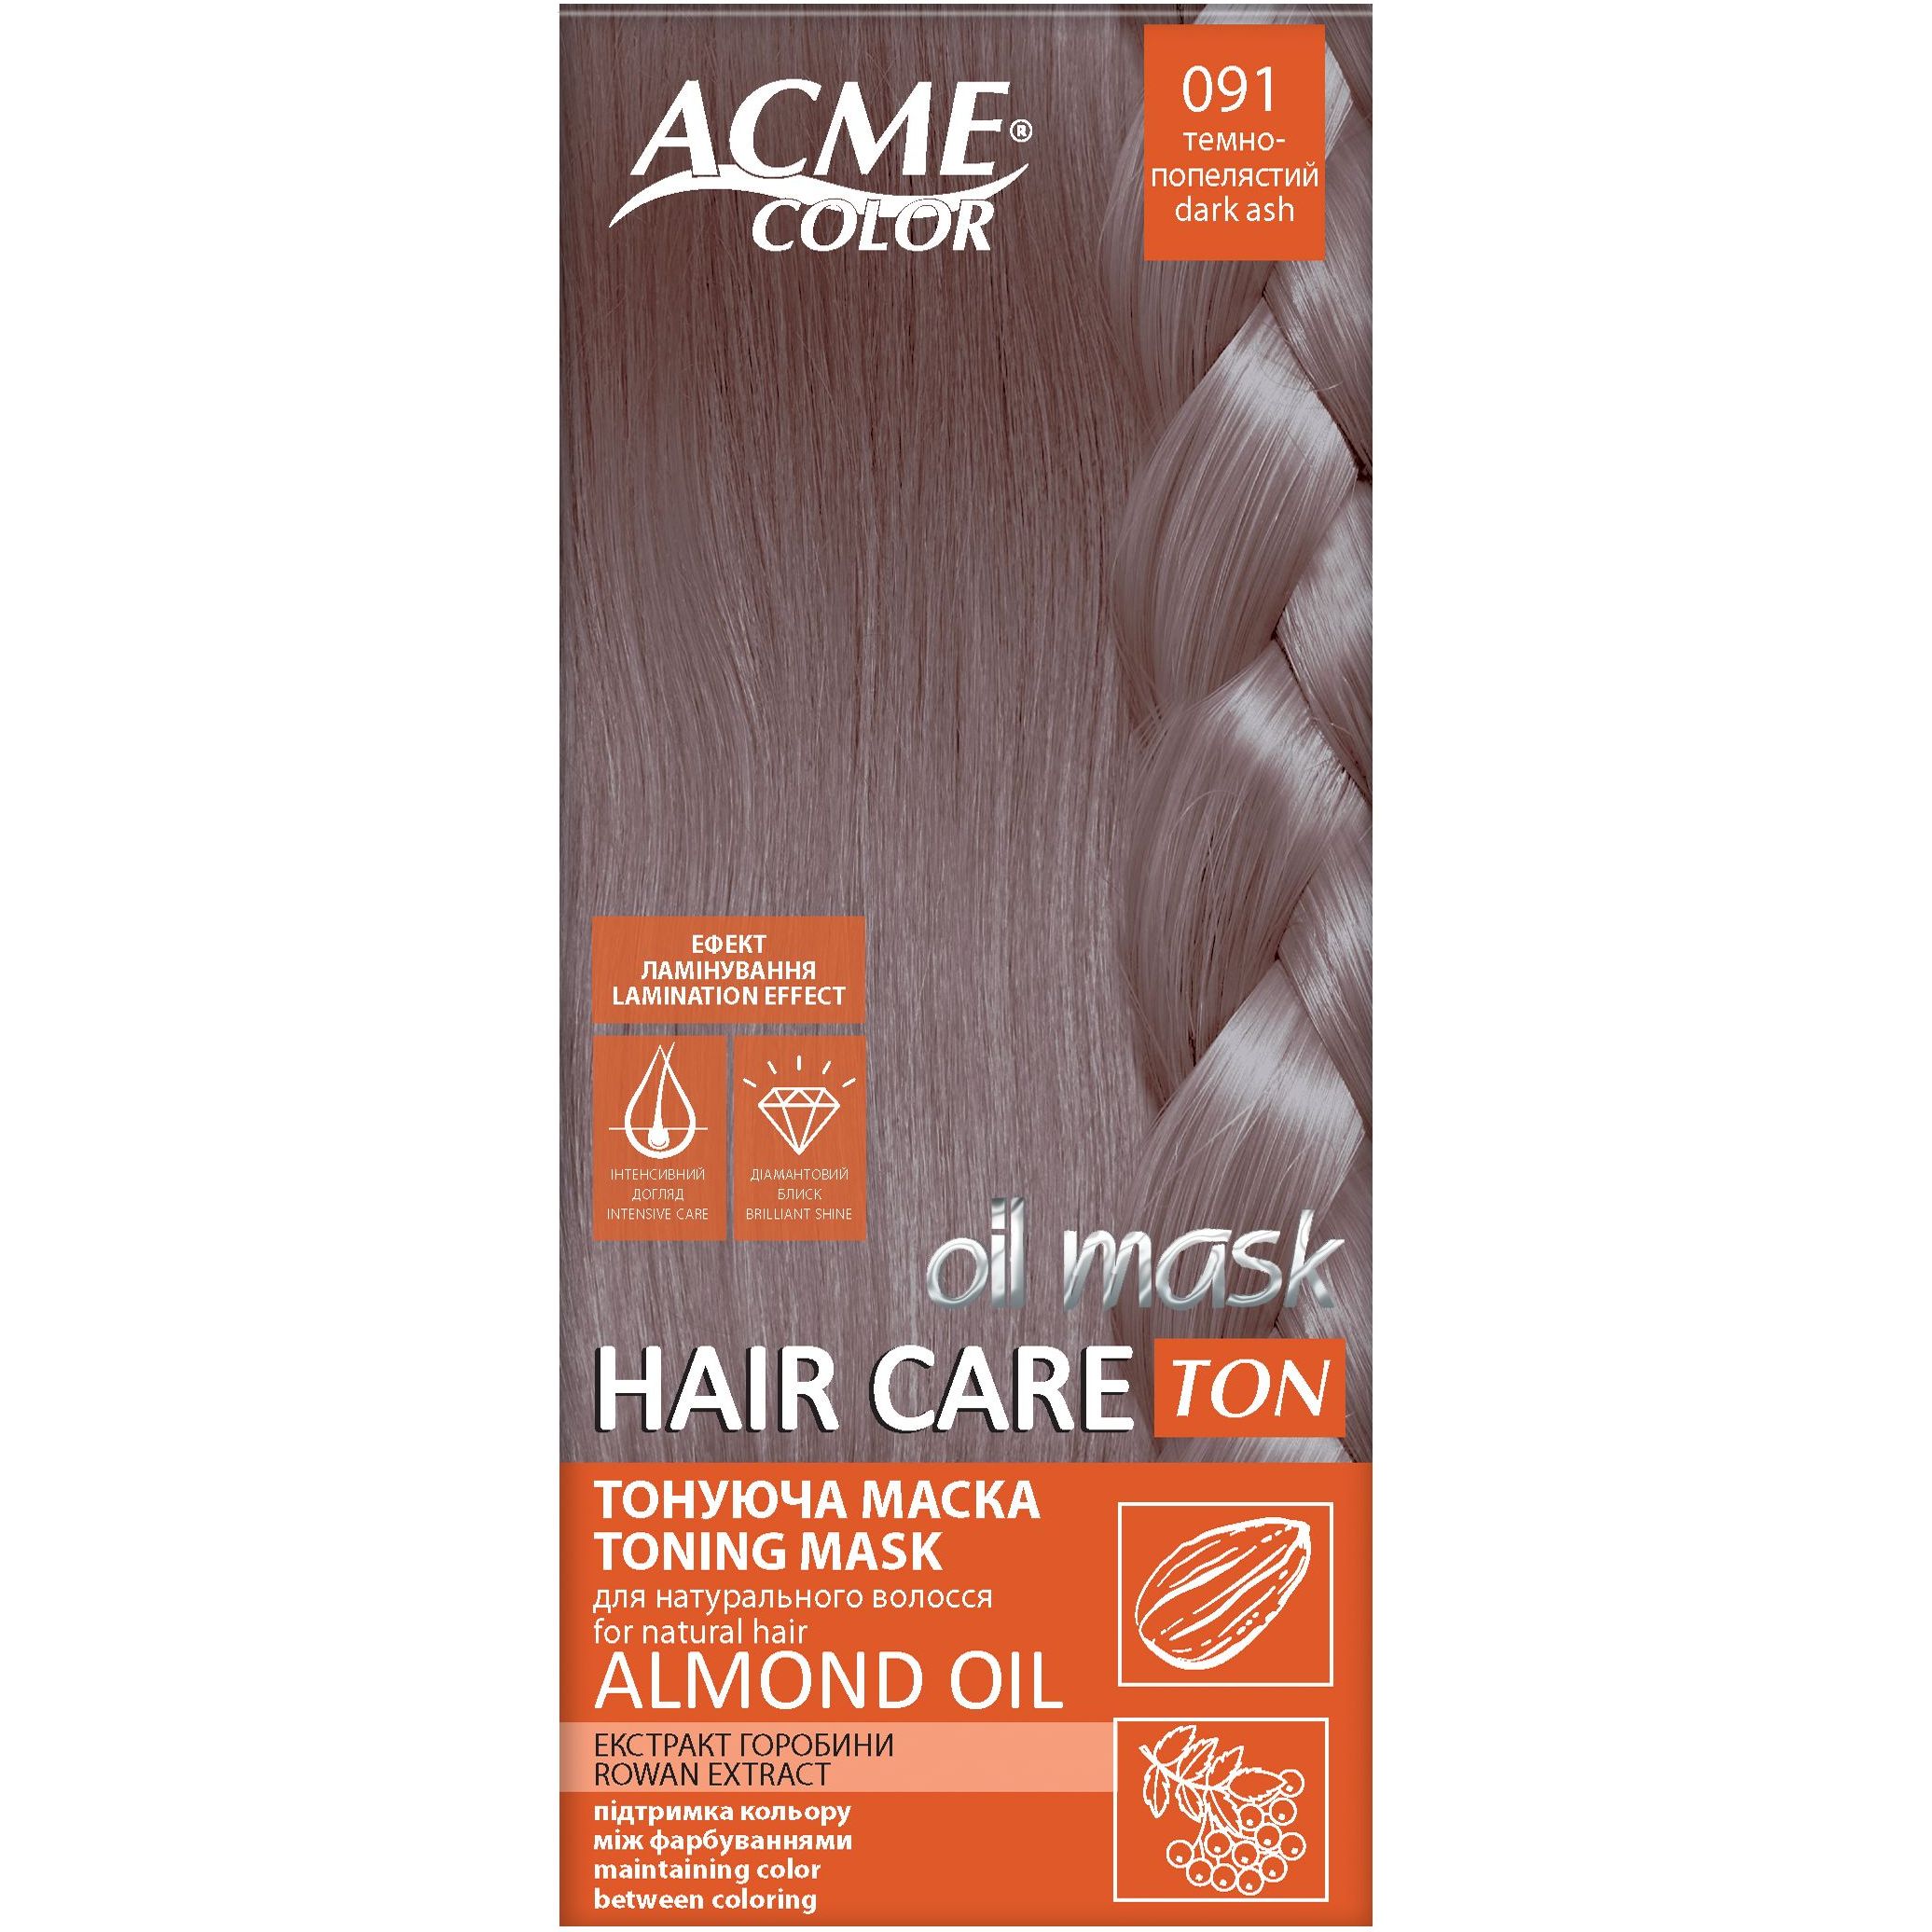 Тонуюча маска для волосся Acme Color Hair Care Ton oil mask, відтінок 091, темно-попелястий, 30 мл - фото 1